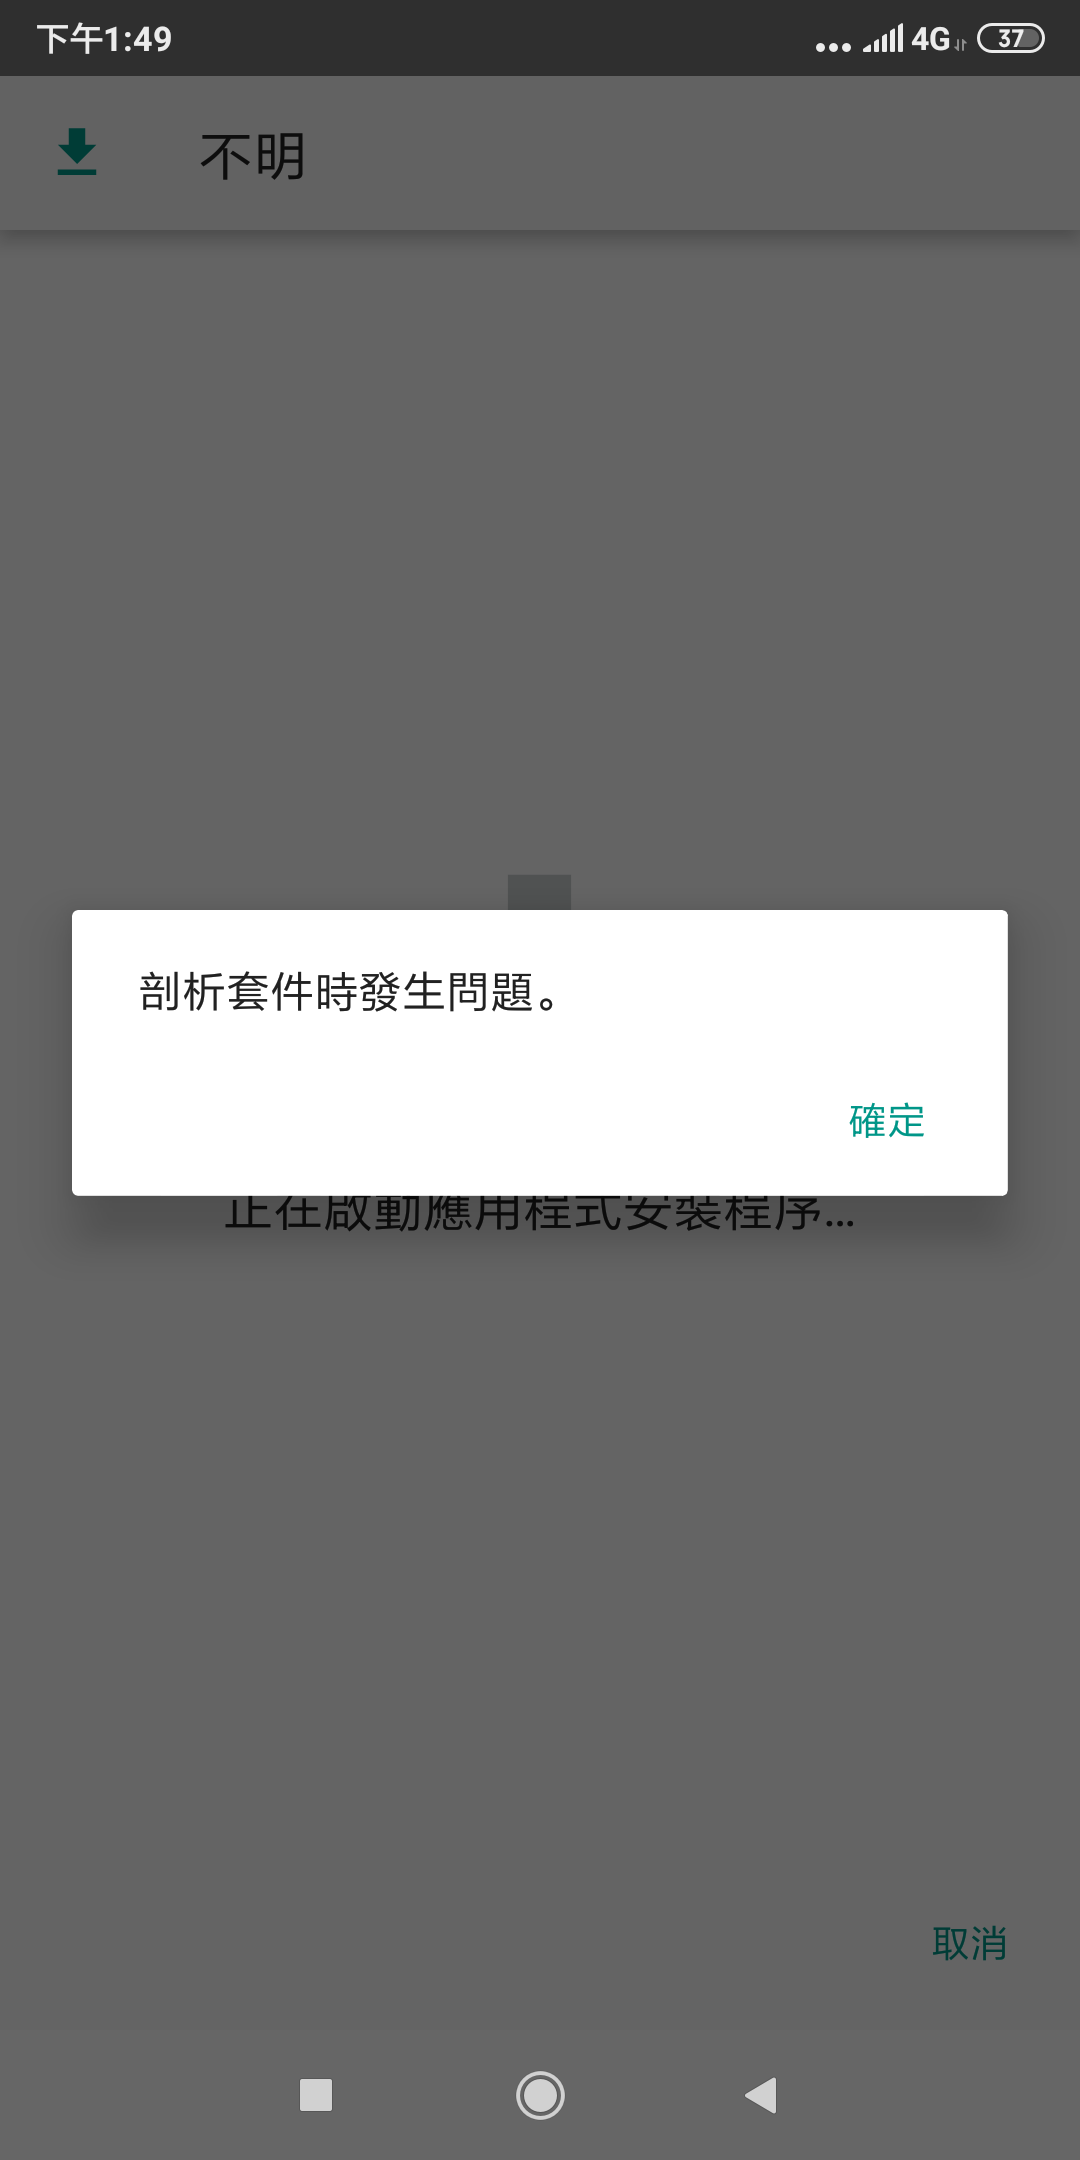 Screenshot_2019-05-08-13-49-42-263_com.google.android.packageinstaller.png